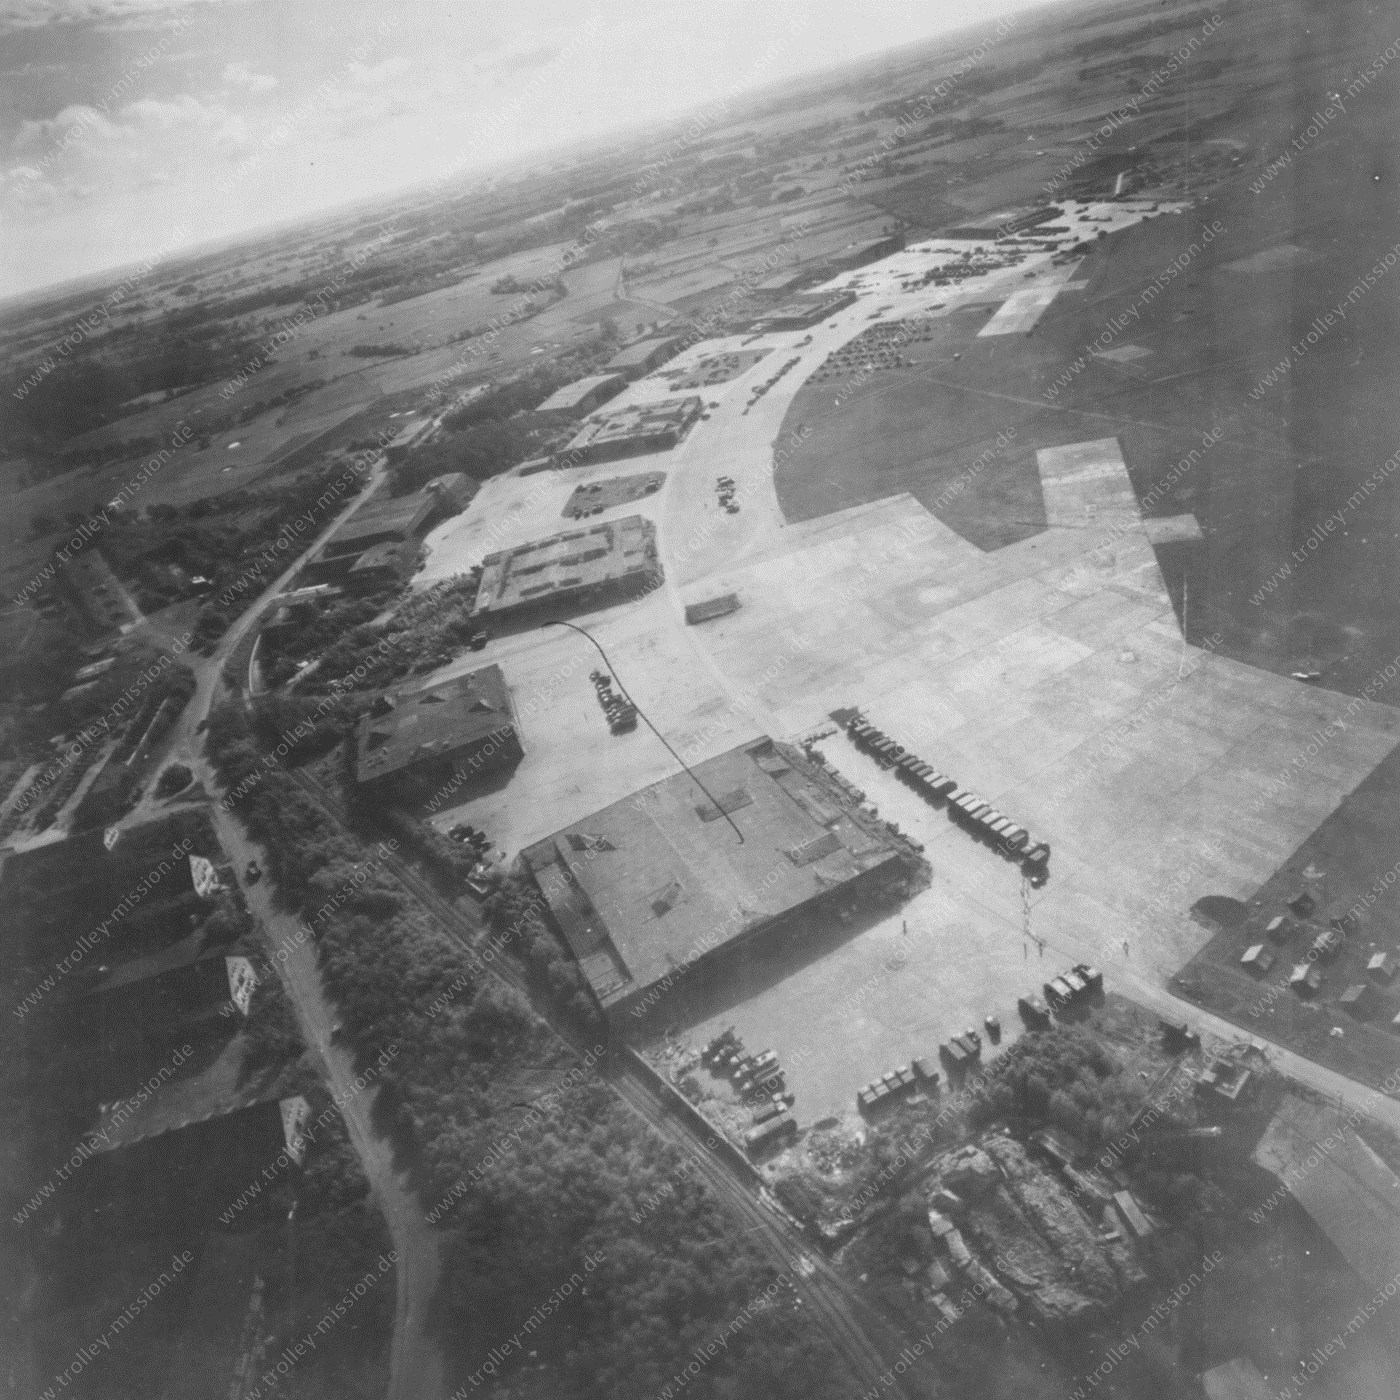 Fliegerhorst Oldenburg - Luftaufnahme des Militärflugplatz 1945